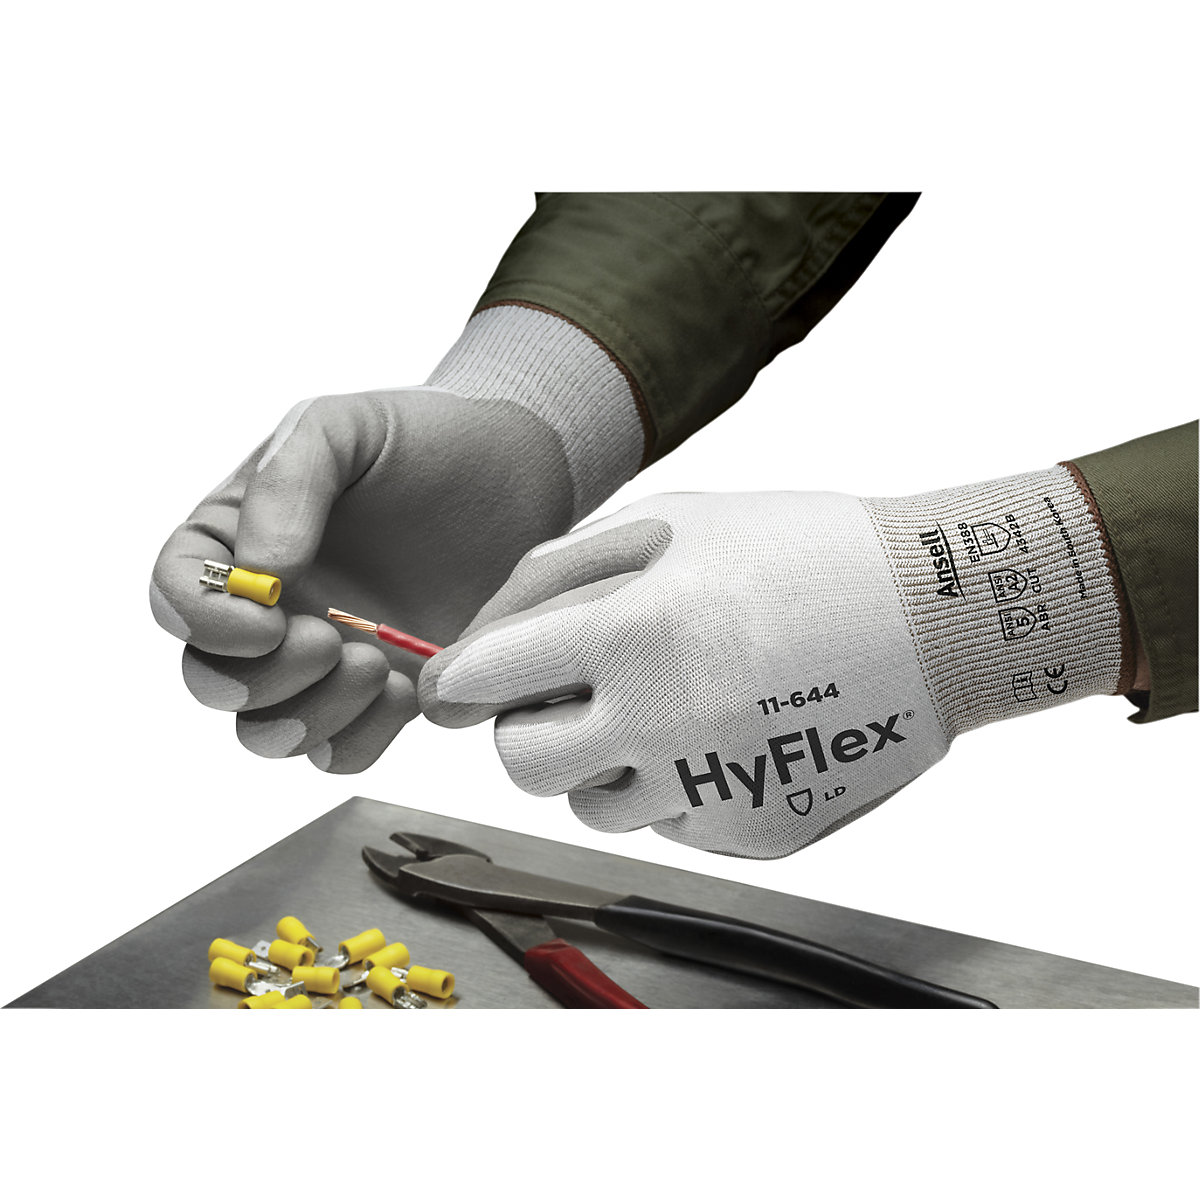 Guante de trabajo HyFlex® 11-644 – Ansell (Imagen del producto 6)-5